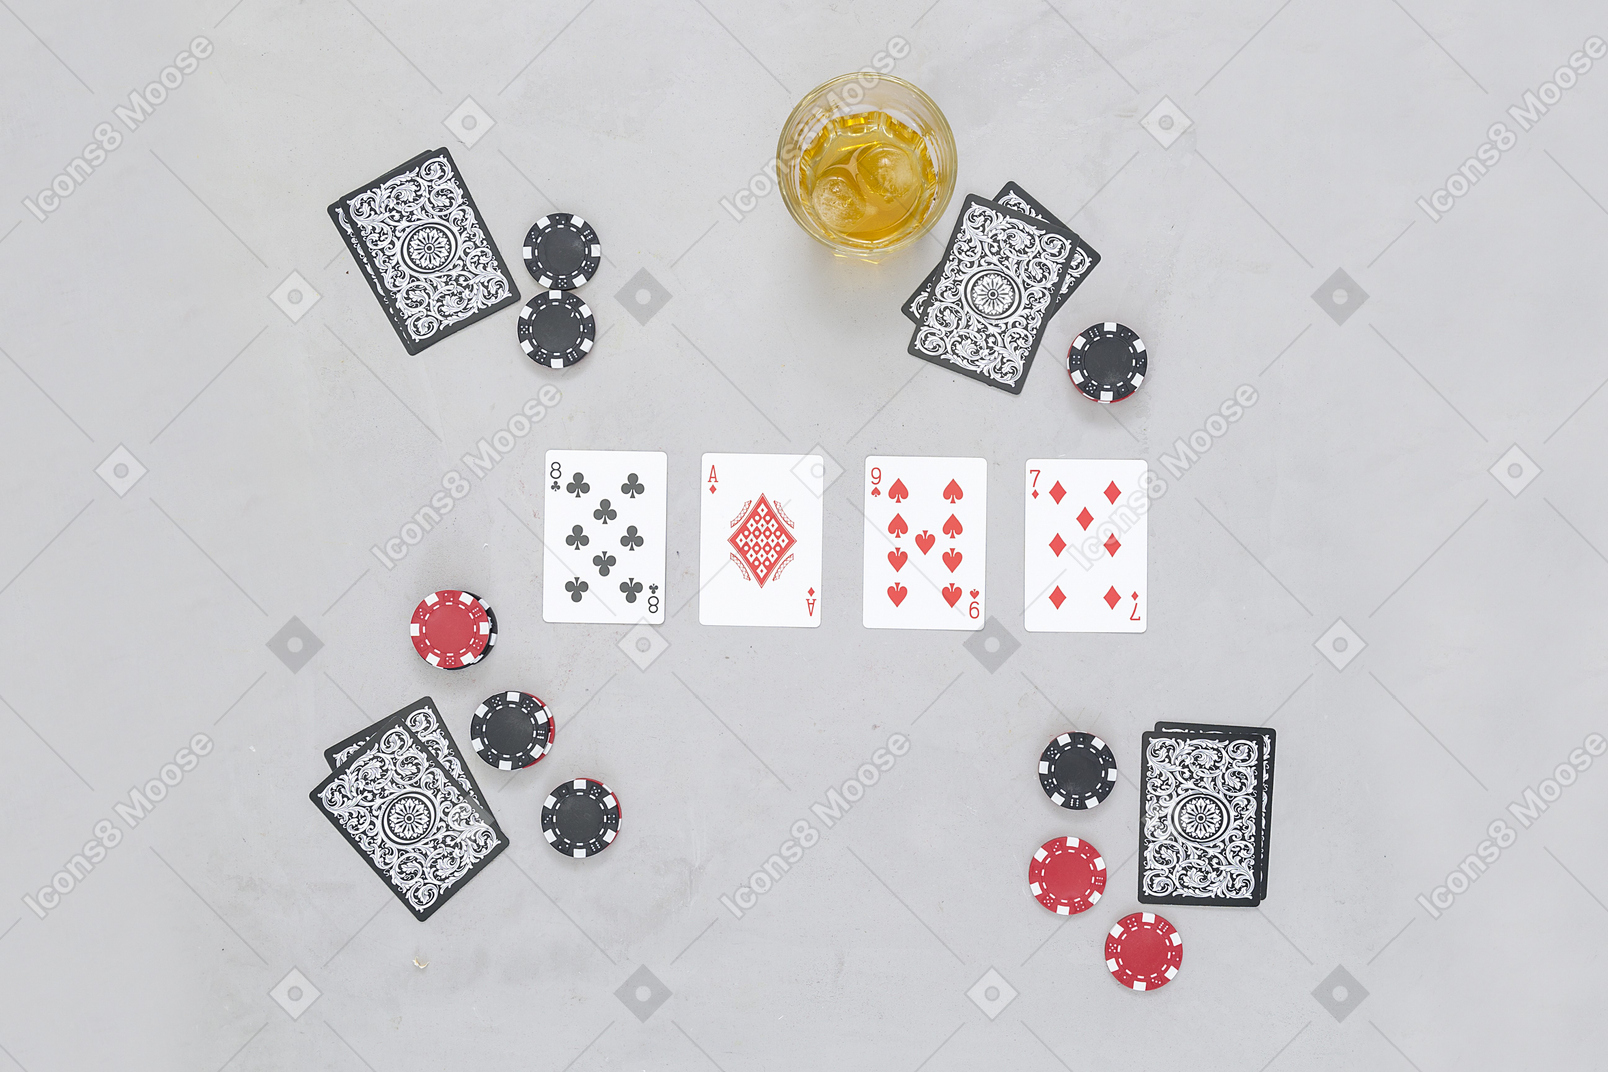 Juegos de cartas de mesa son interesantes para jugar en